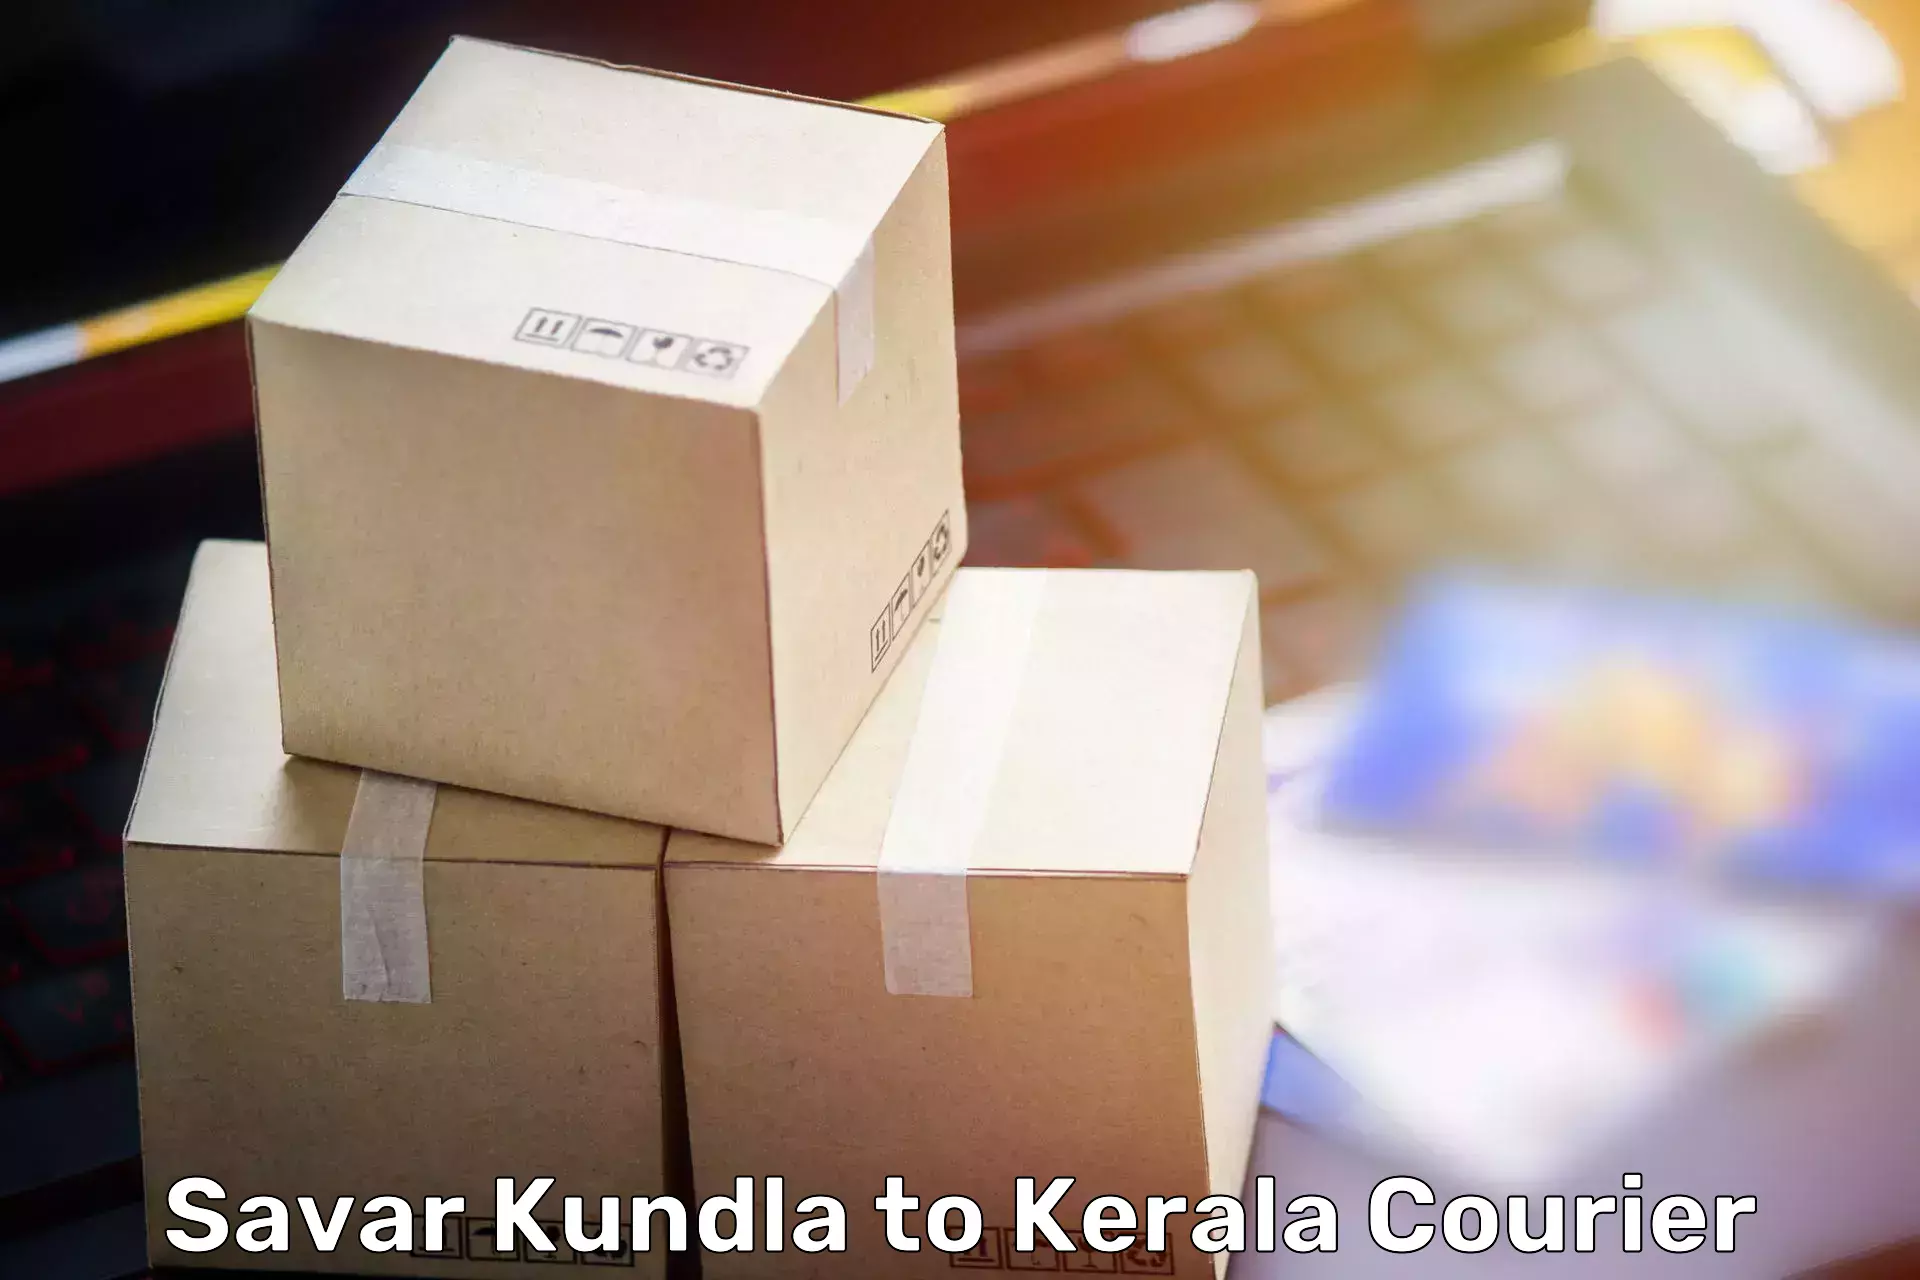 Professional packing services Savar Kundla to Kuchi